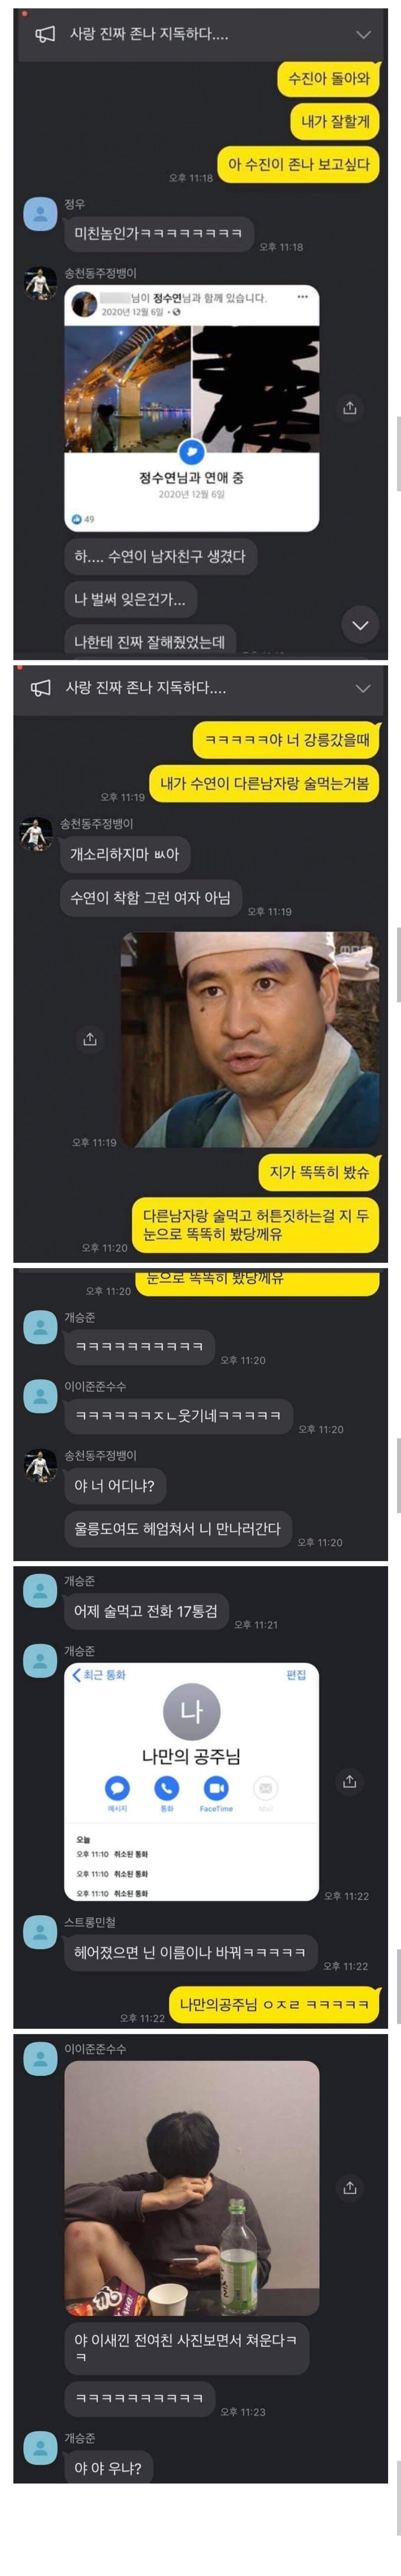 싸나이들의 이별 단톡.talk